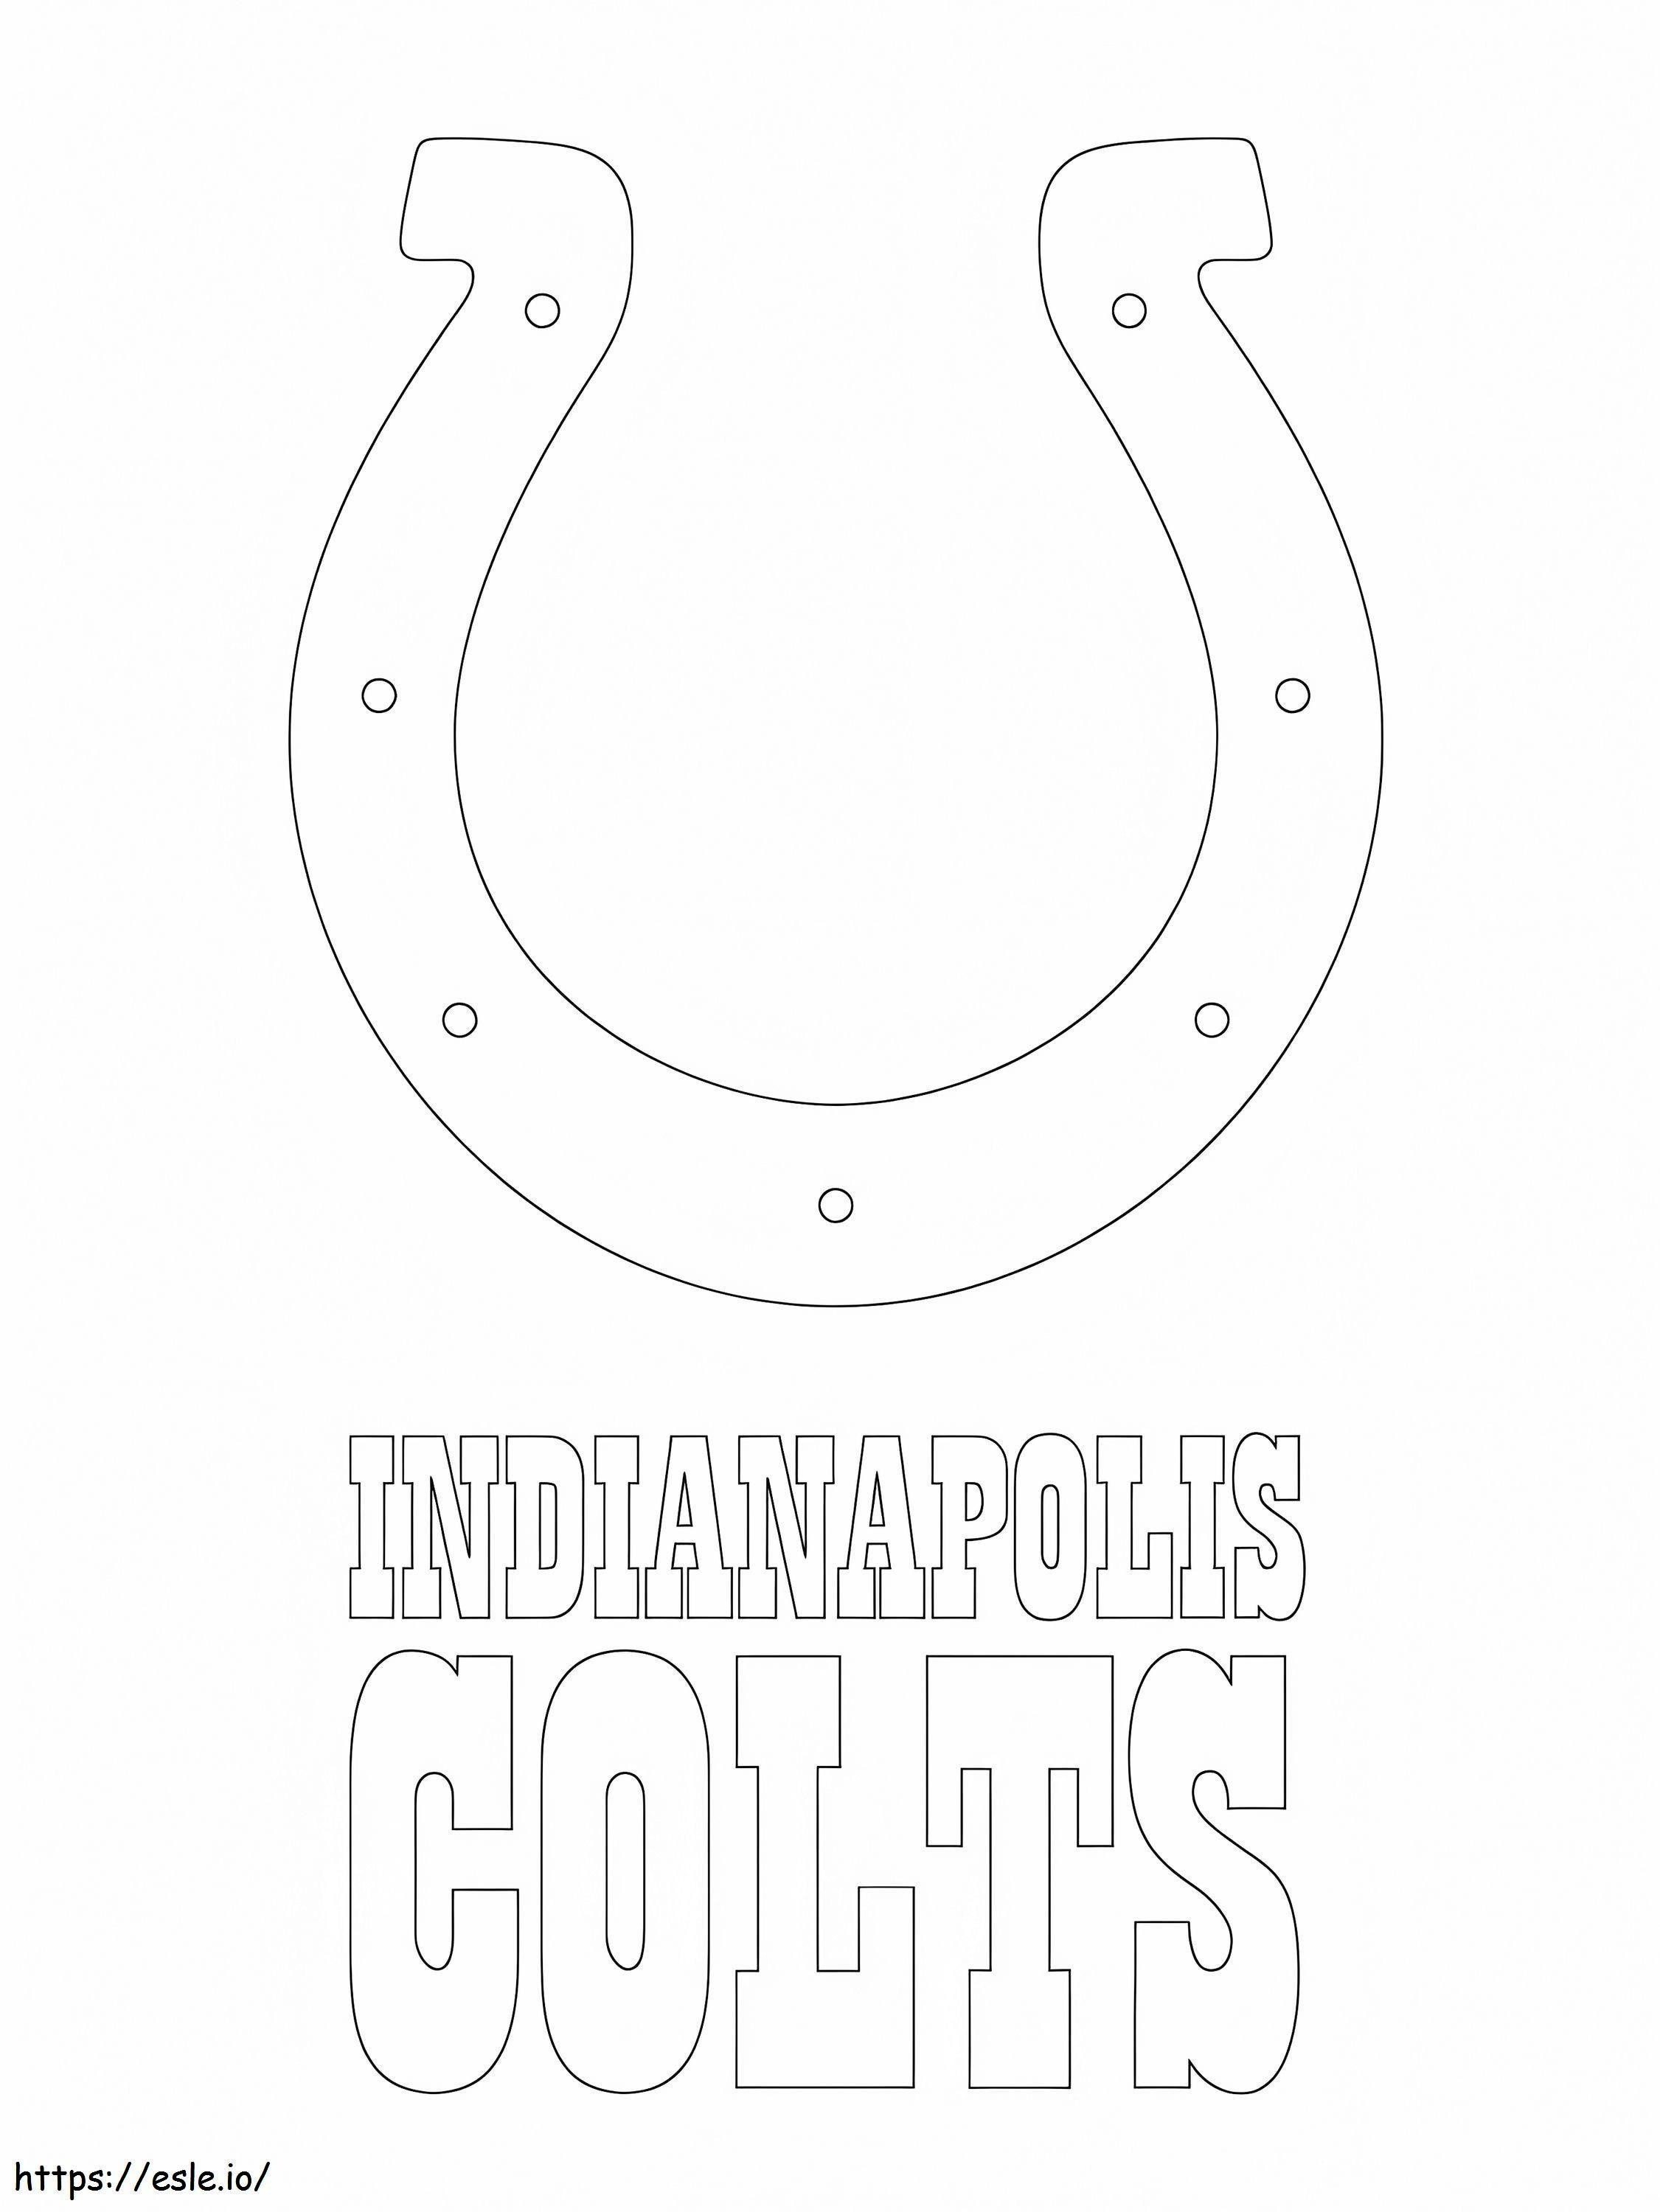 Indianapolis Colts-Logo ausmalbilder